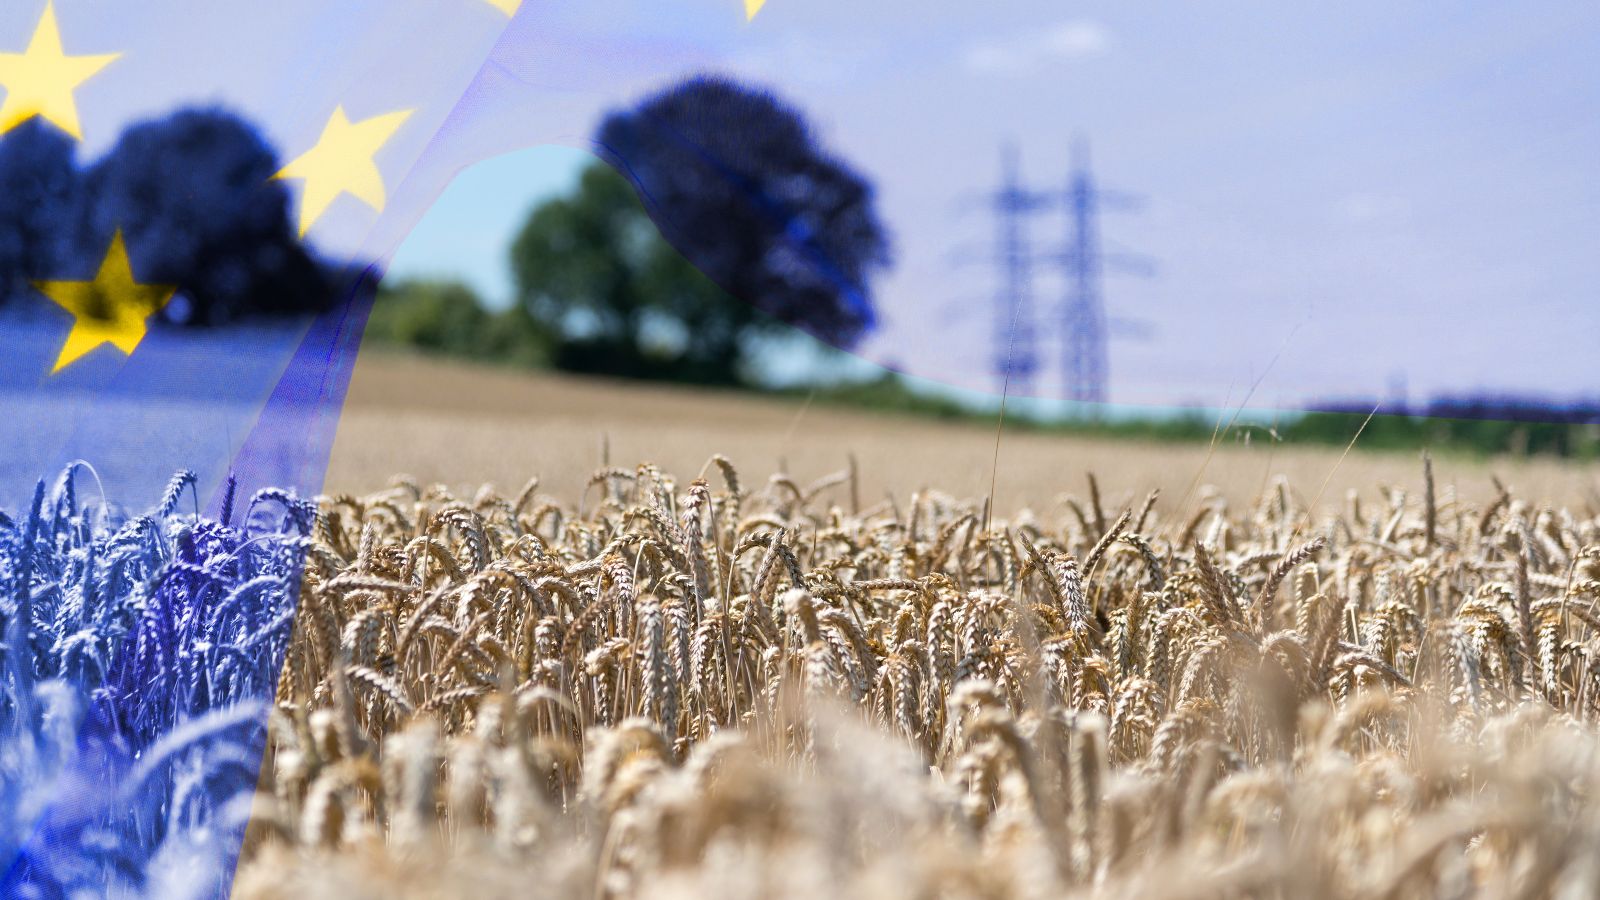 Eine transparente flagge der Europäischen Union weht in das Landschaftsbil eines Kornfeldes. Im Hintergrund erkennt man die verschwommene Siluette vereinzelter Bäume sowie eines Höchstspannungsmastes.